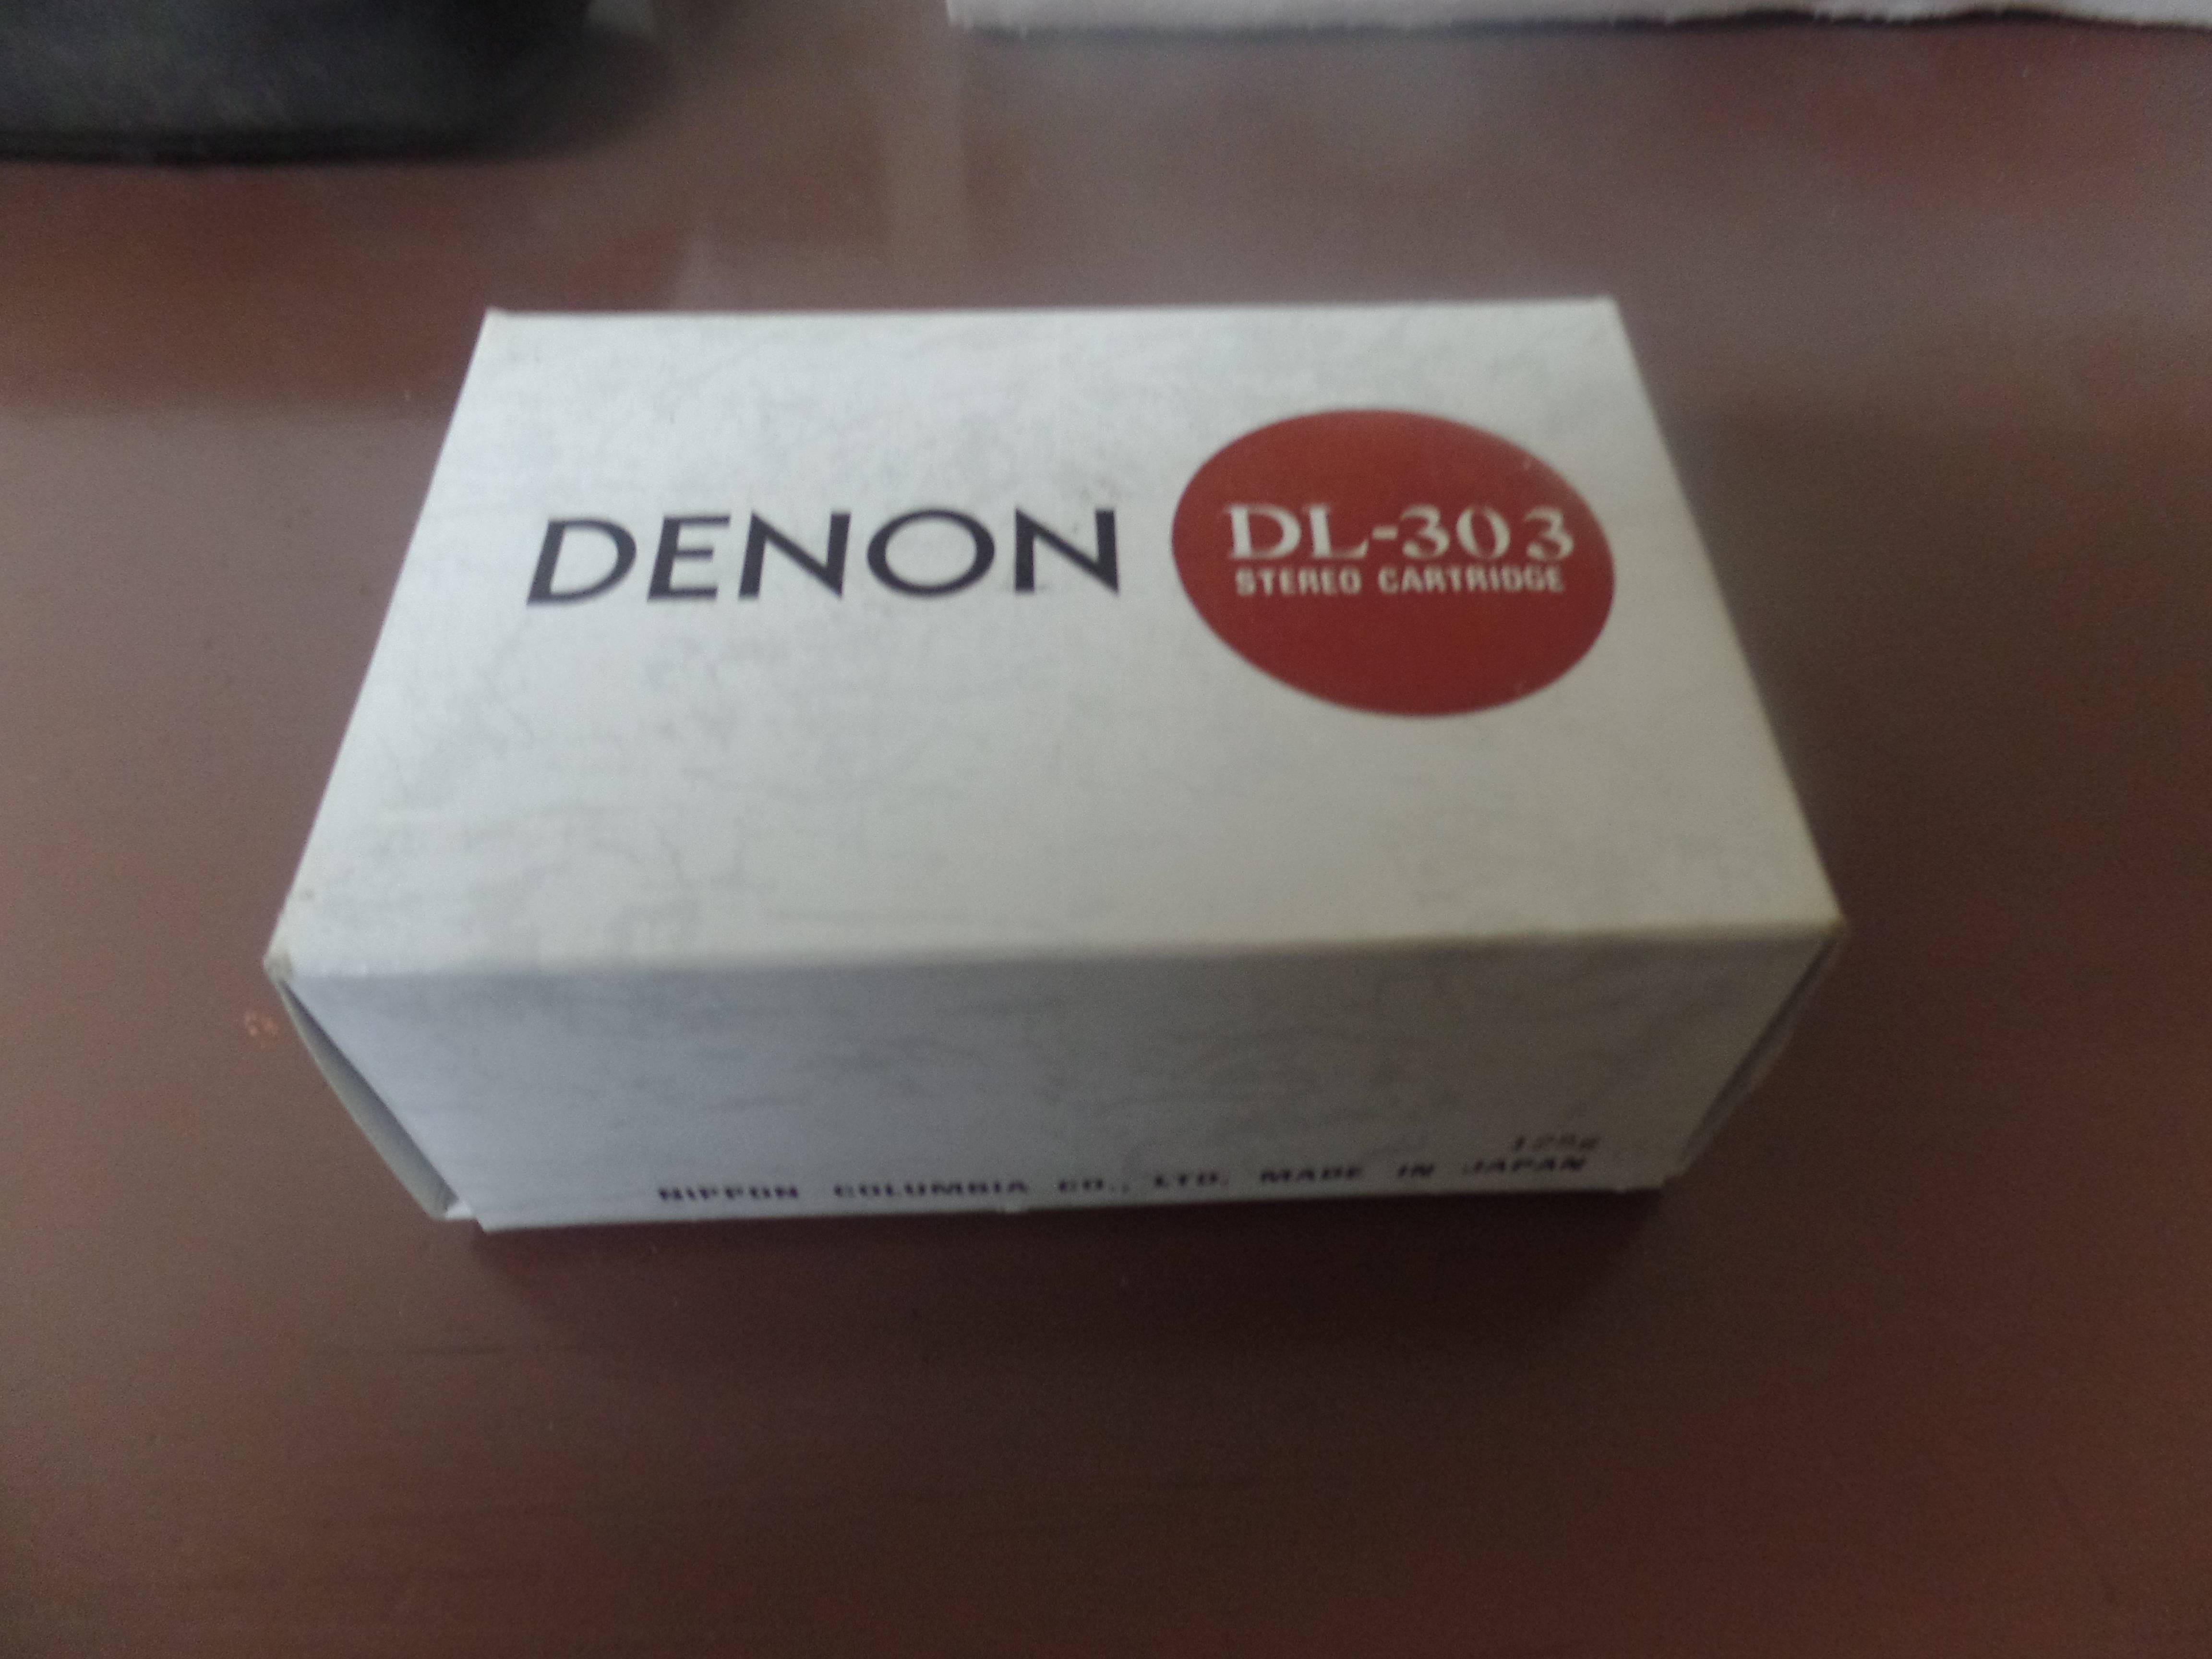 Denon DL-303